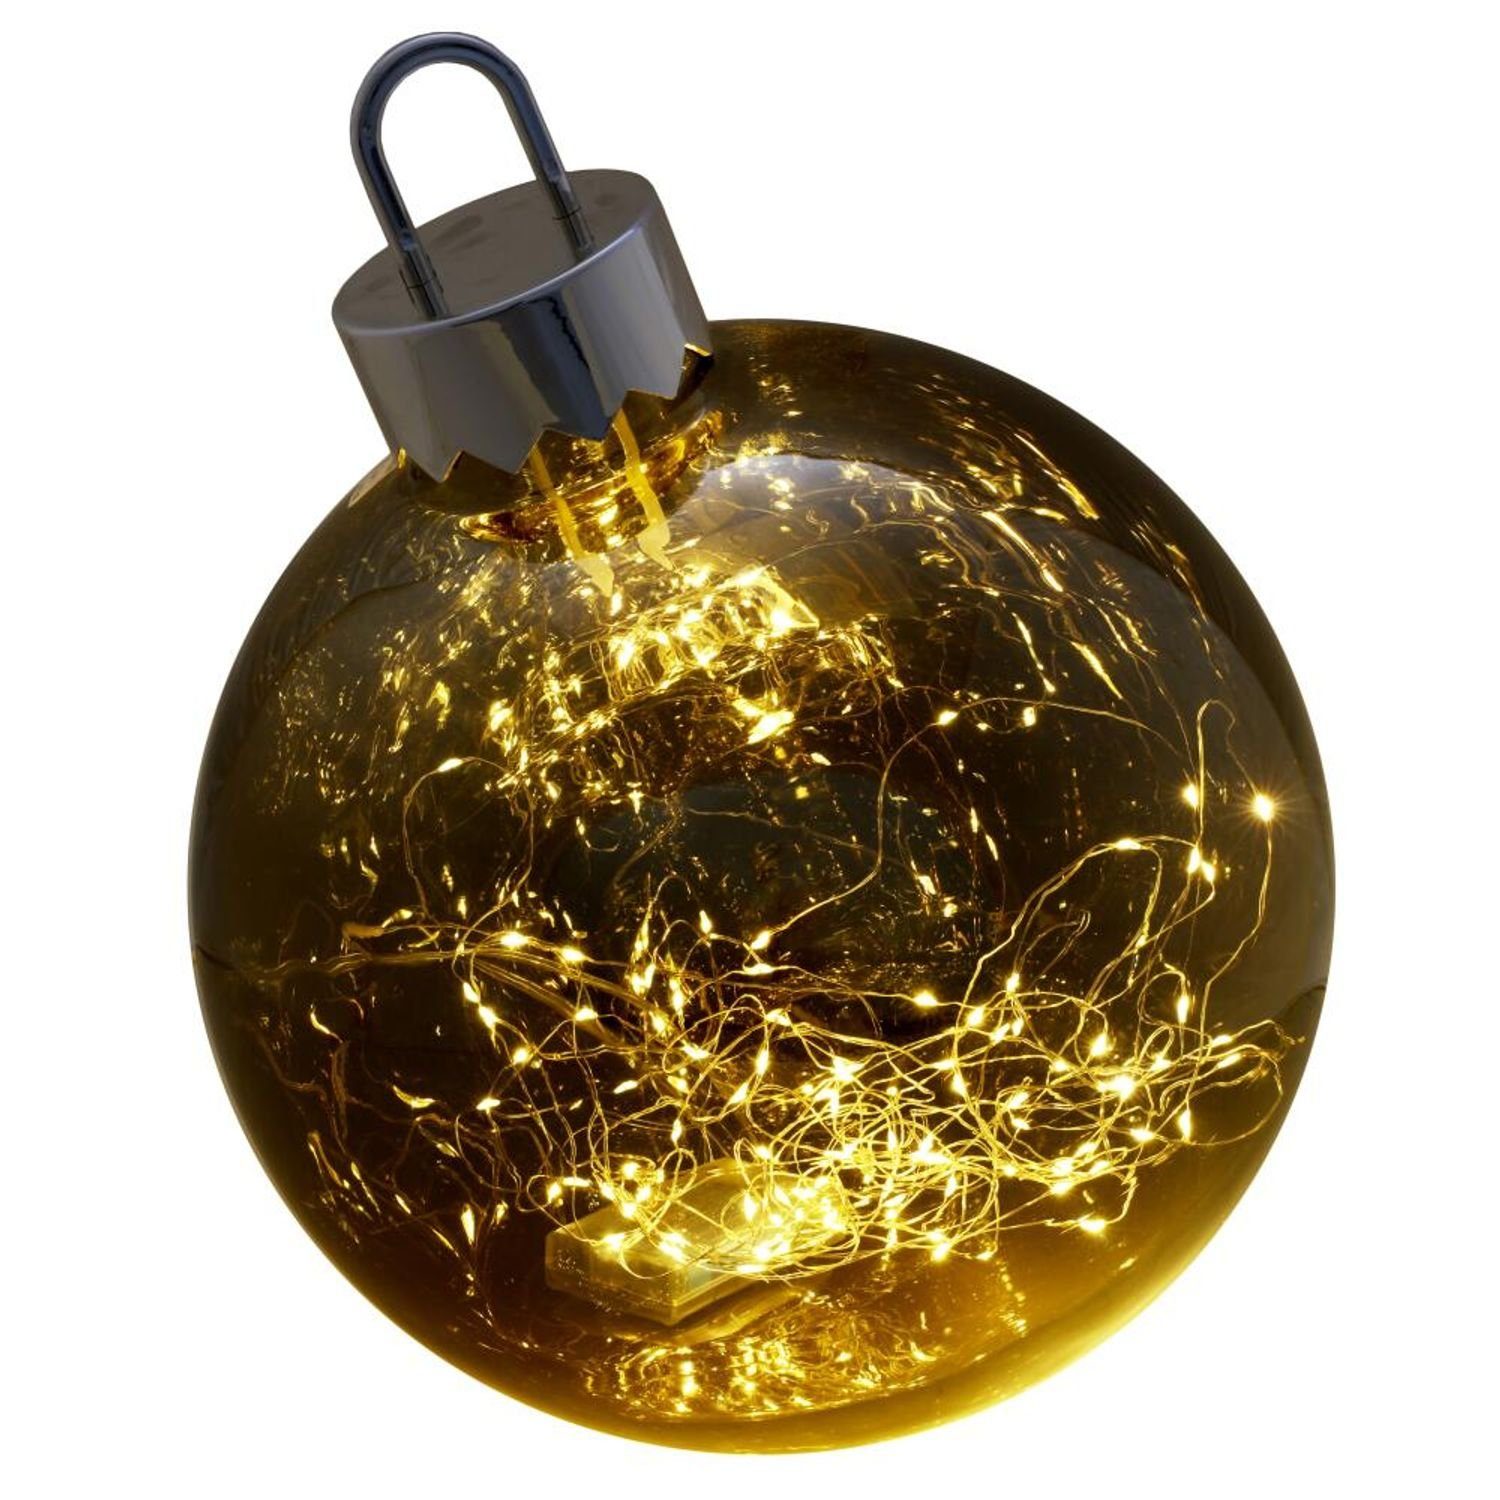 Christbaumschmuck BURI 2x Dek Weihnachtsbaumkugel Glaskugel mit Lichterkette Advent Weihnachten